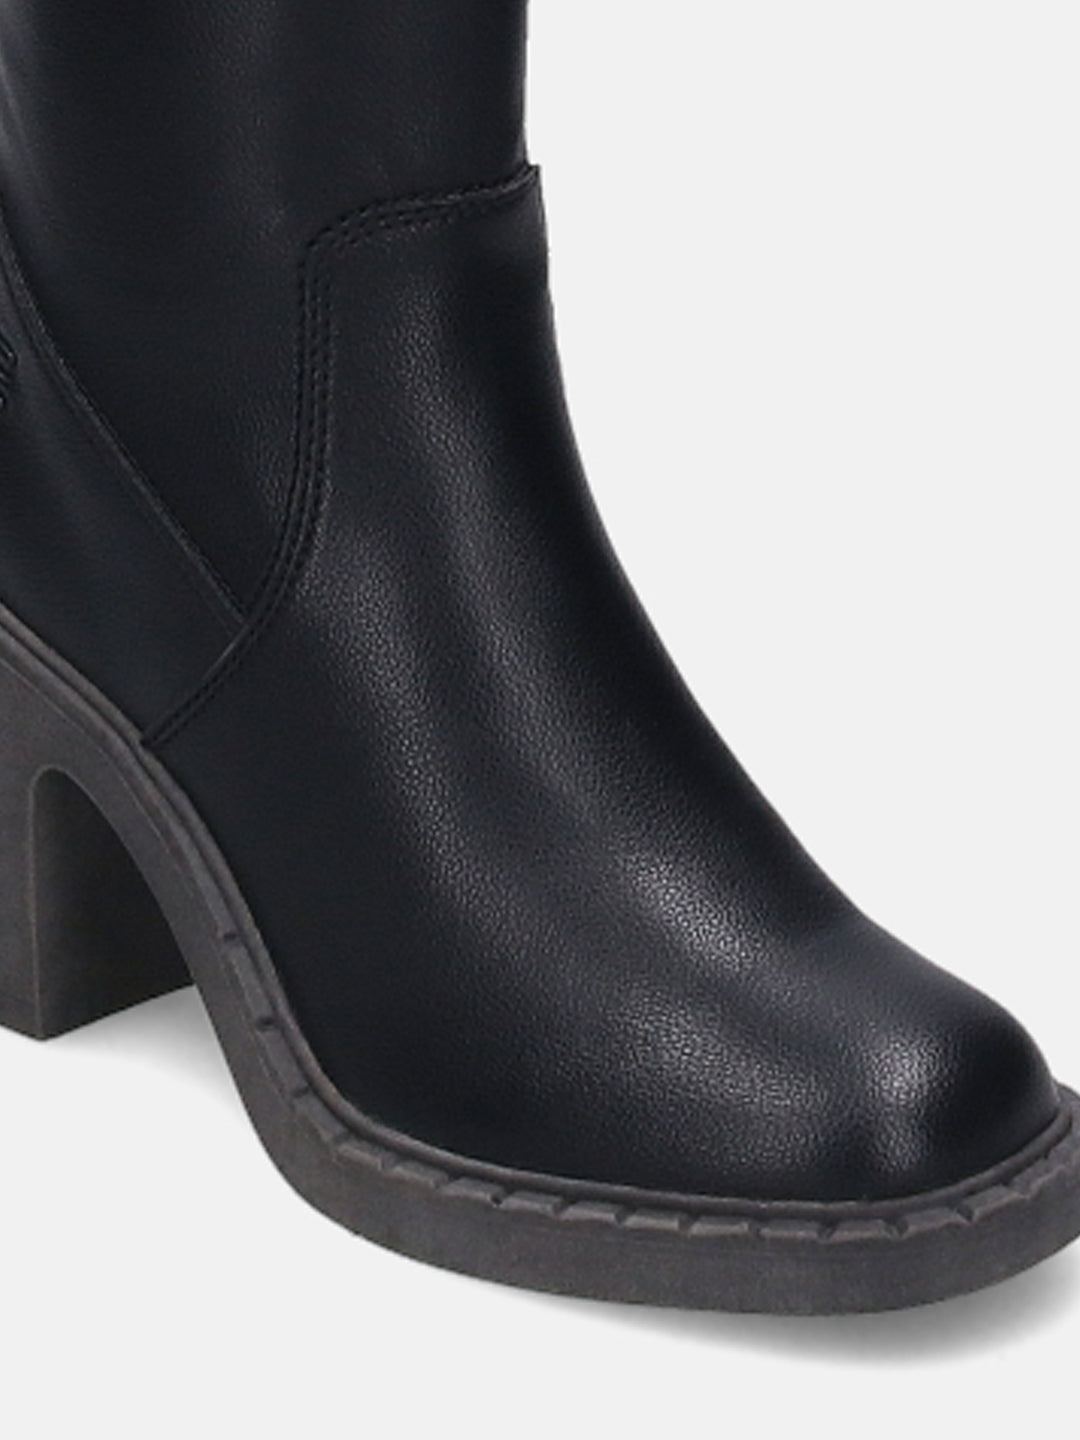 Malea Black Thigh-High Boots - BAGATT